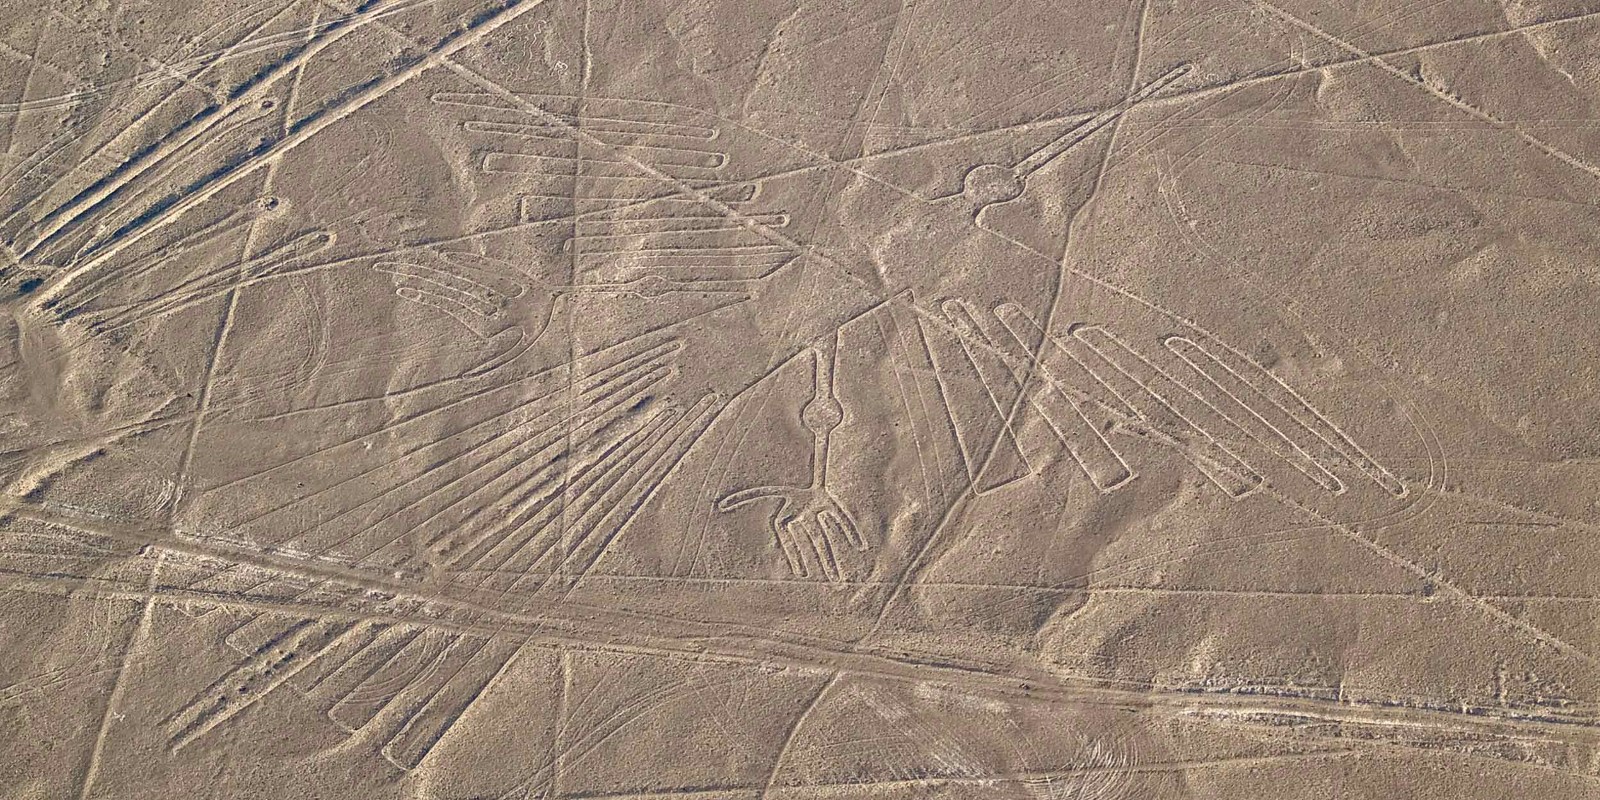 méthodes de création des crop circles... - Page 9 Nazca-condor-geoglyph_jarno-gonzalez-zarraonandia